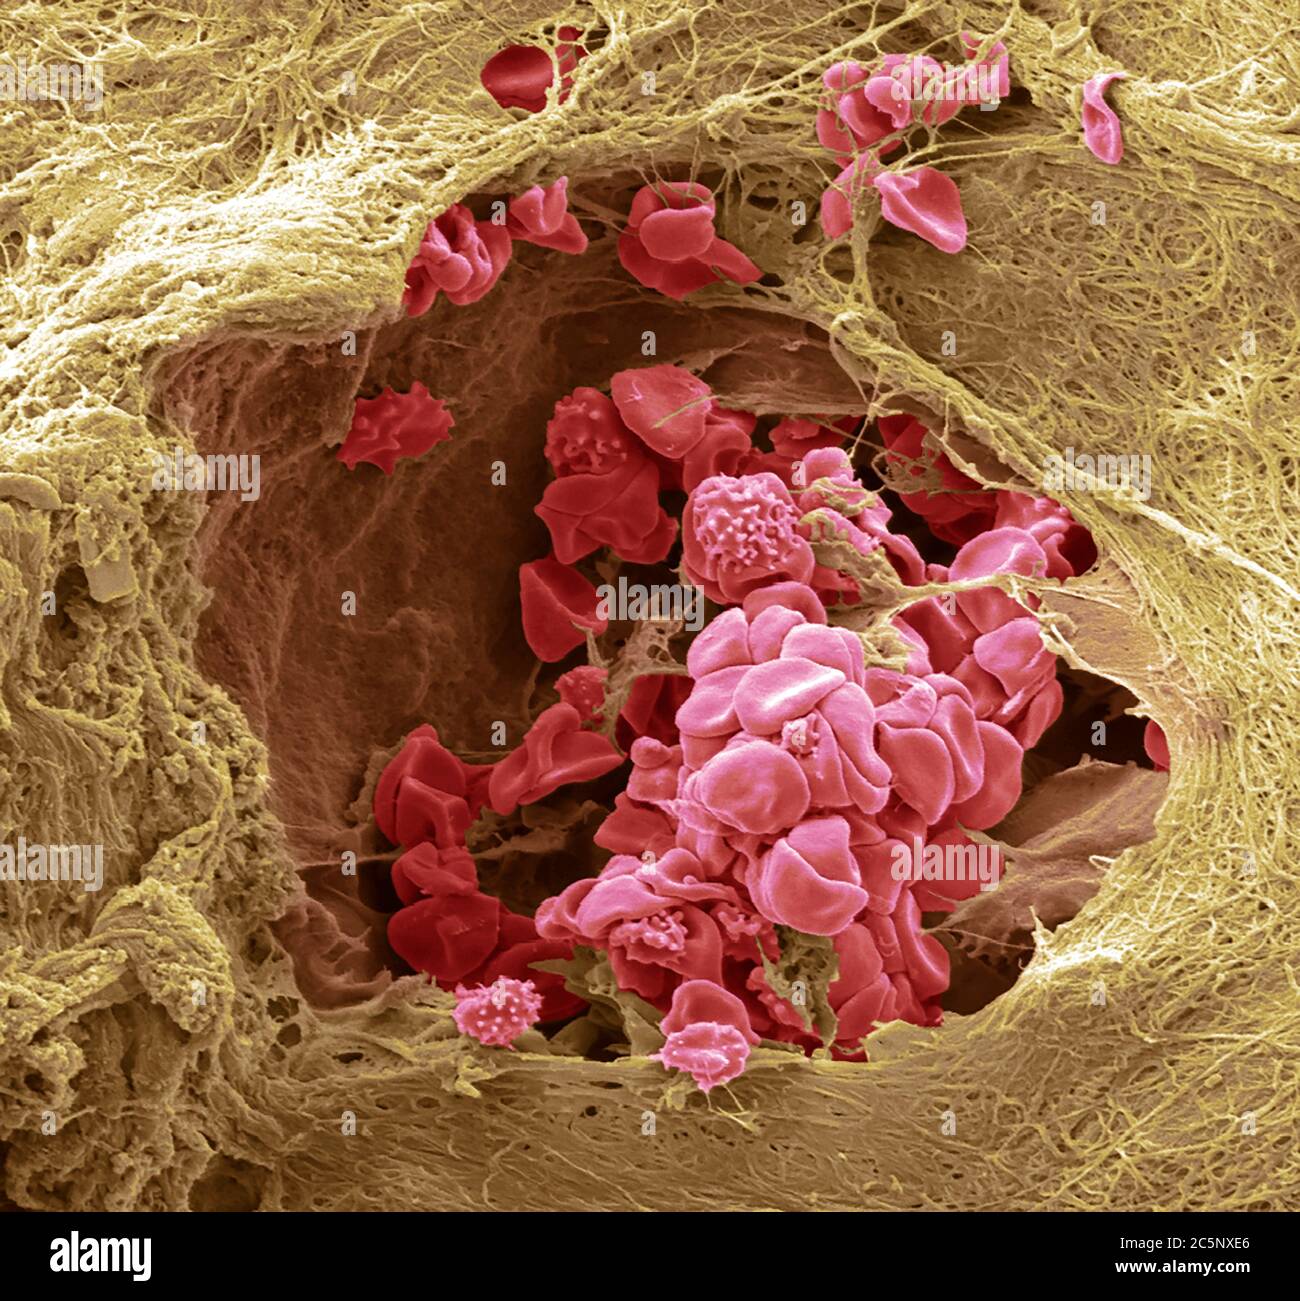 Vaisseau sanguin cutané. Micrographe électronique à balayage coloré (SEM) d'un vaisseau sanguin (artériole) dans le derme de la peau. Dans le vaisseau sanguin se trouvent les globules rouges (érythrocytes, rouges) qui transportent l'oxygène autour du corps. Certaines de ces globules rouges sont crénelées. Le vaisseau sanguin est entouré de tissu conjonctif qui donne à la peau son tonus et son élasticité. Agrandissement : 1000 lorsqu'il est imprimé à 10 centimètres de large. Banque D'Images